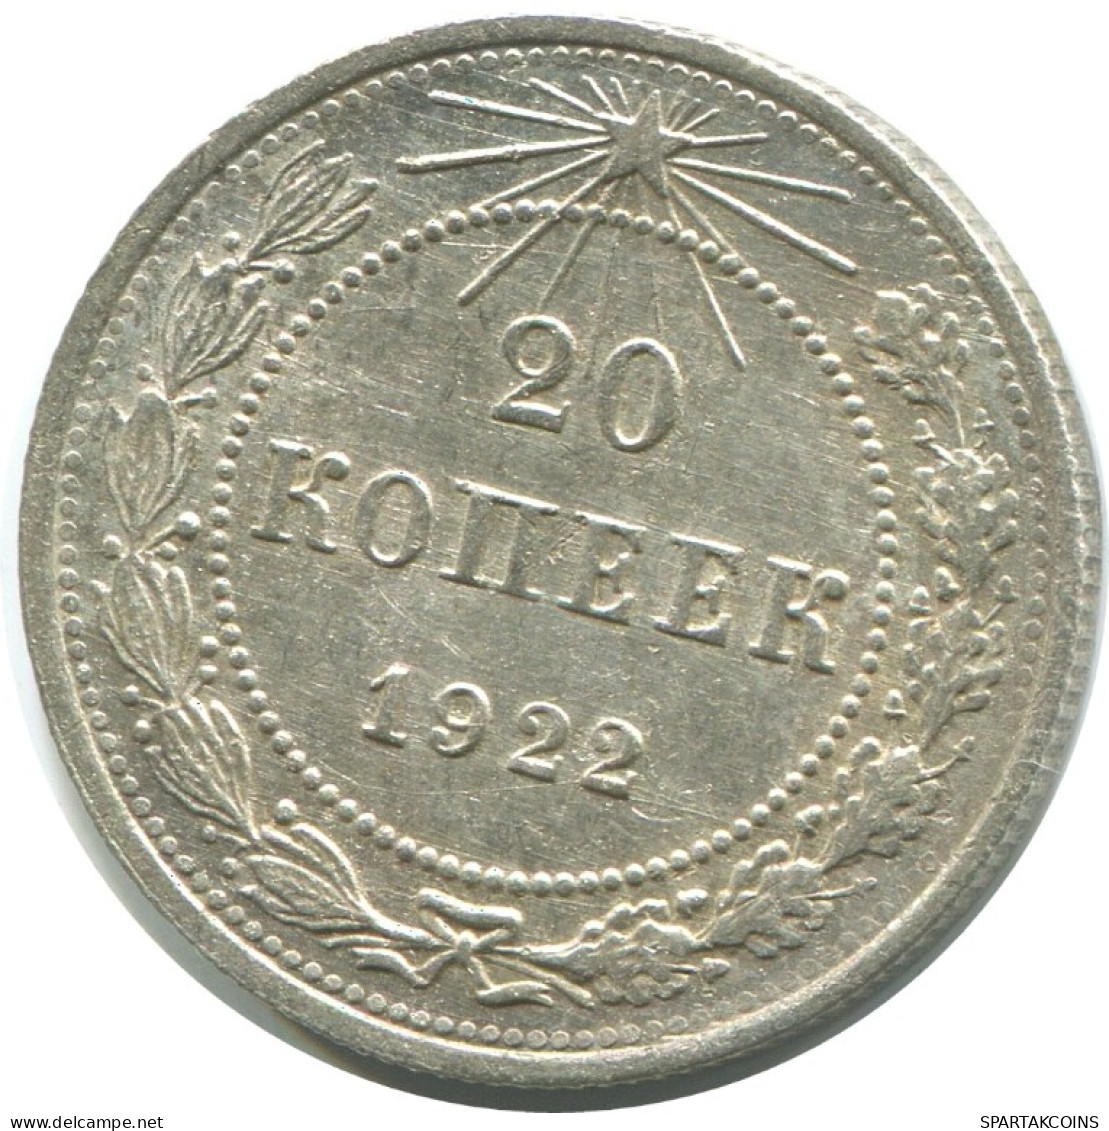 20 KOPEKS 1923 RUSSIA RSFSR SILVER Coin HIGH GRADE #AF407.4.U.A - Rusland